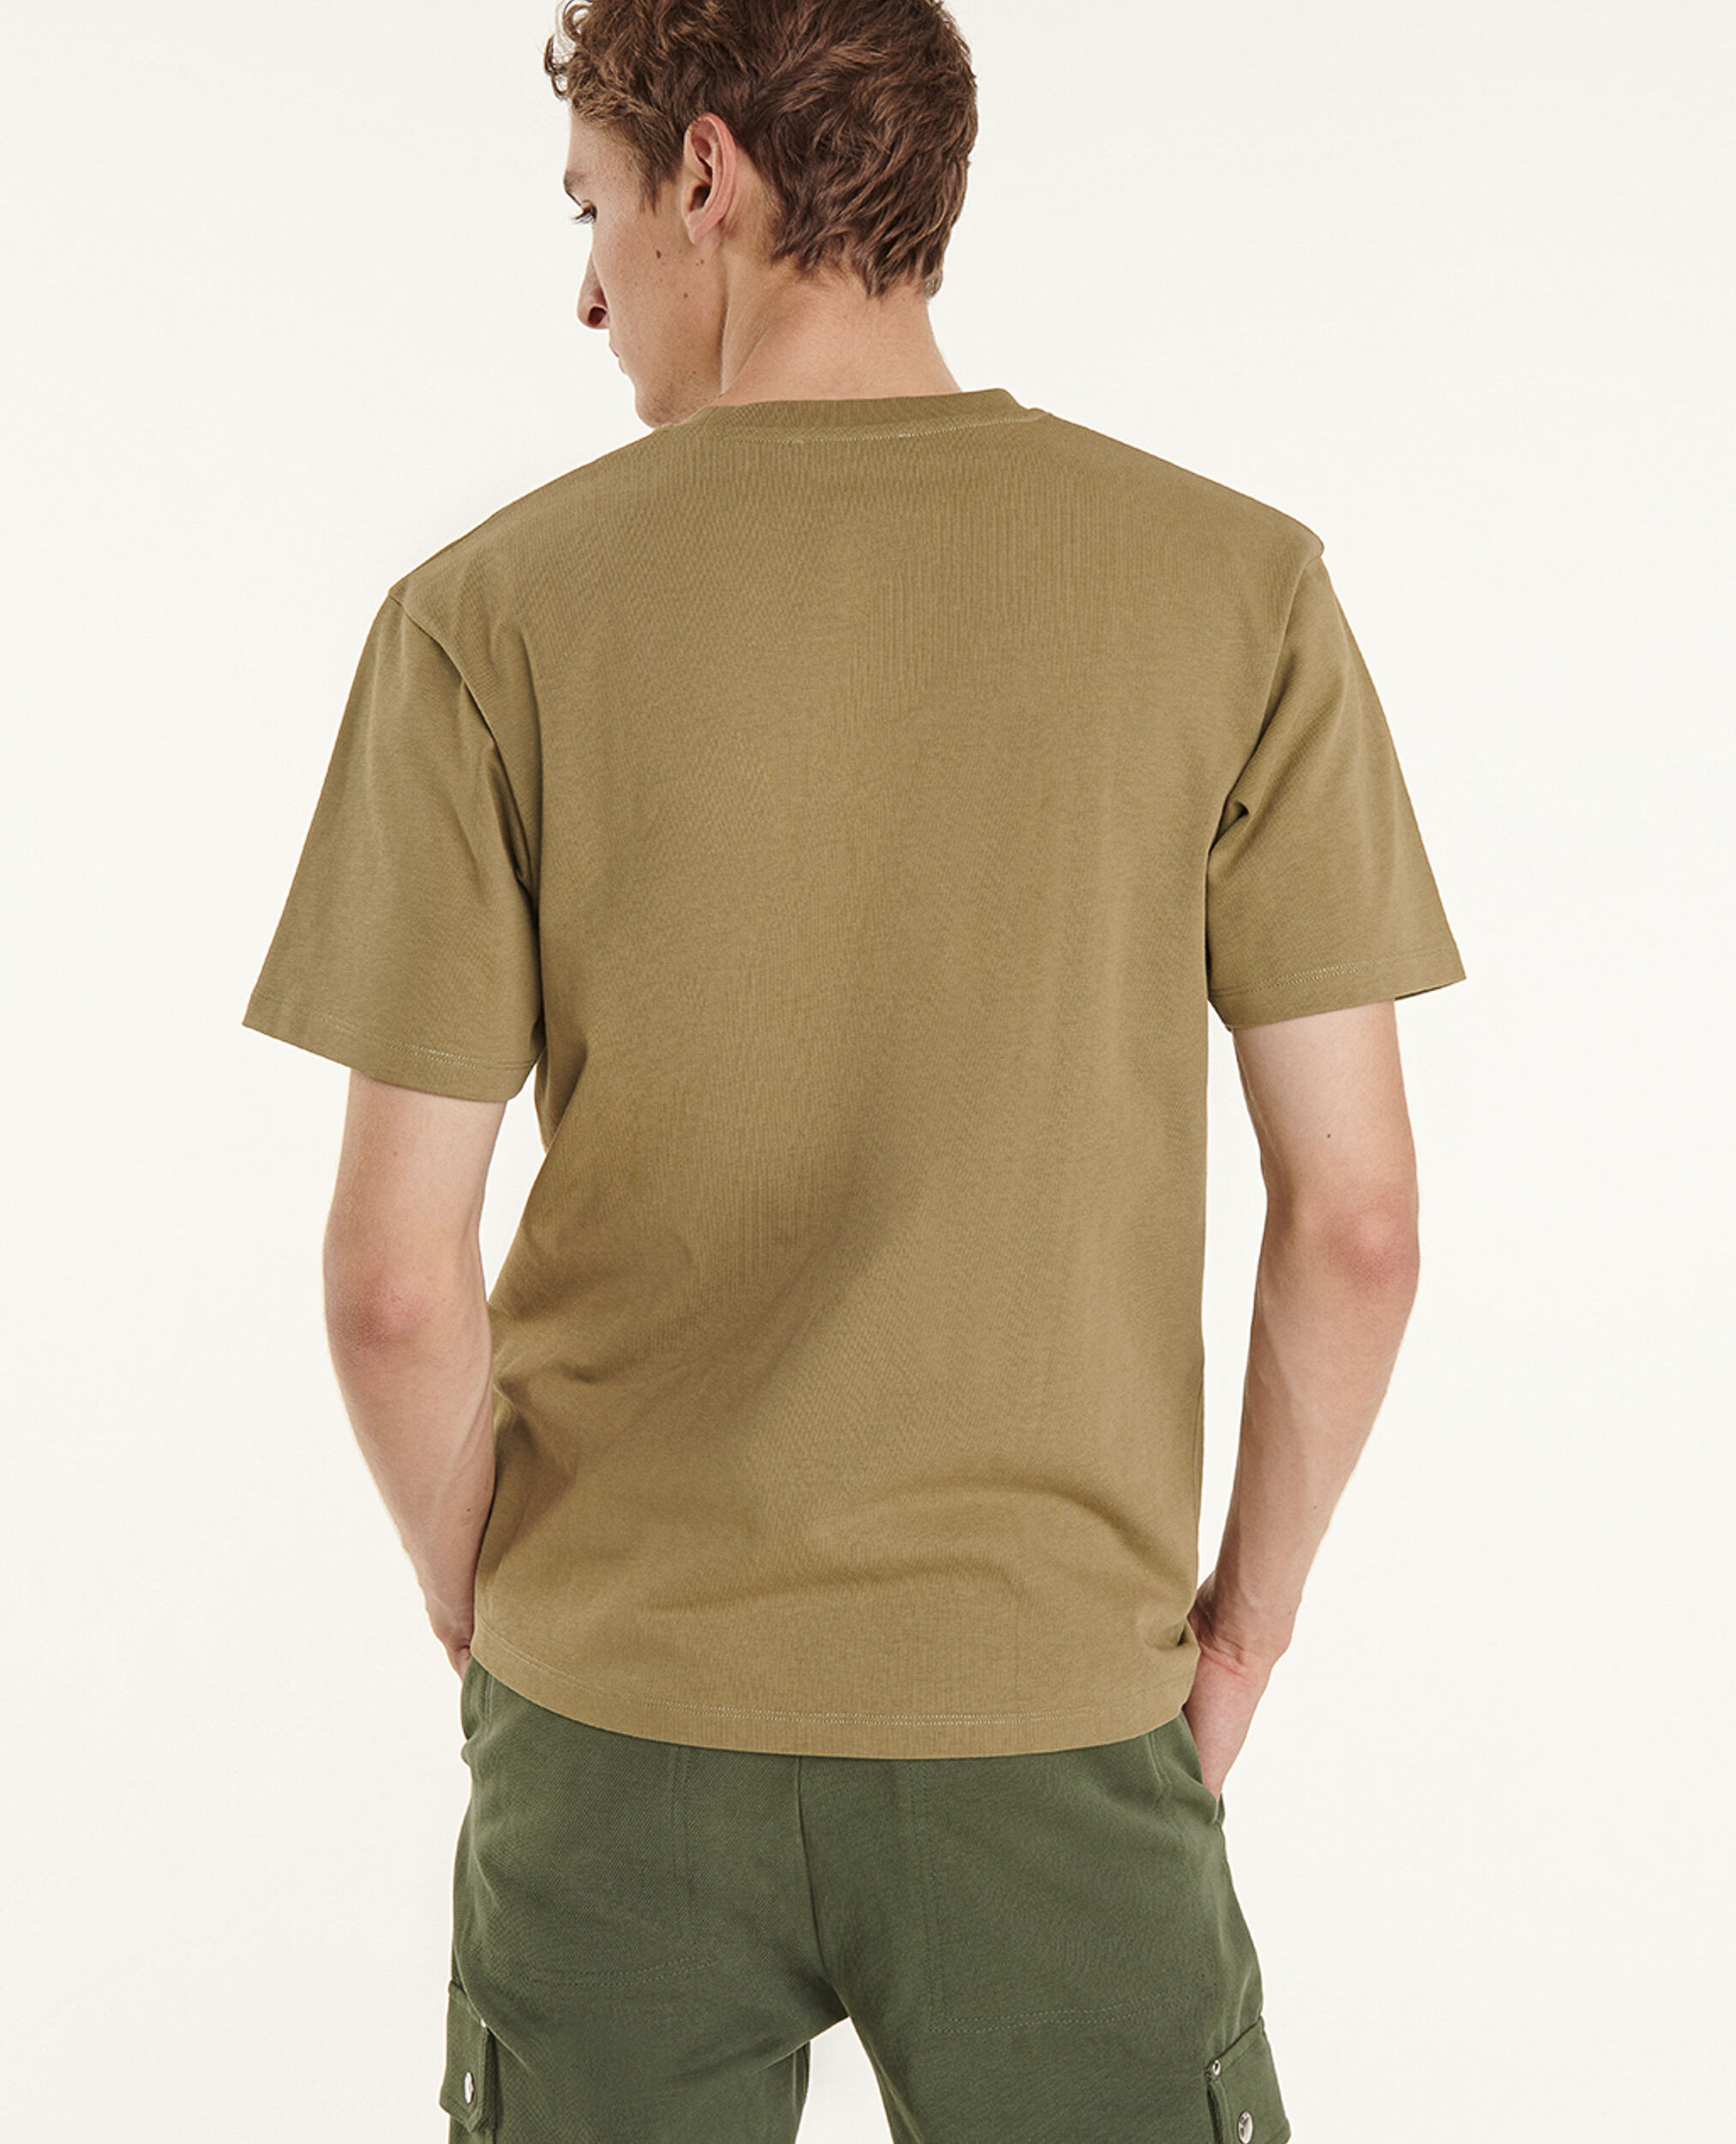 Bedrucktes grünes T-Shirt, OLIVE, hi-res image number null